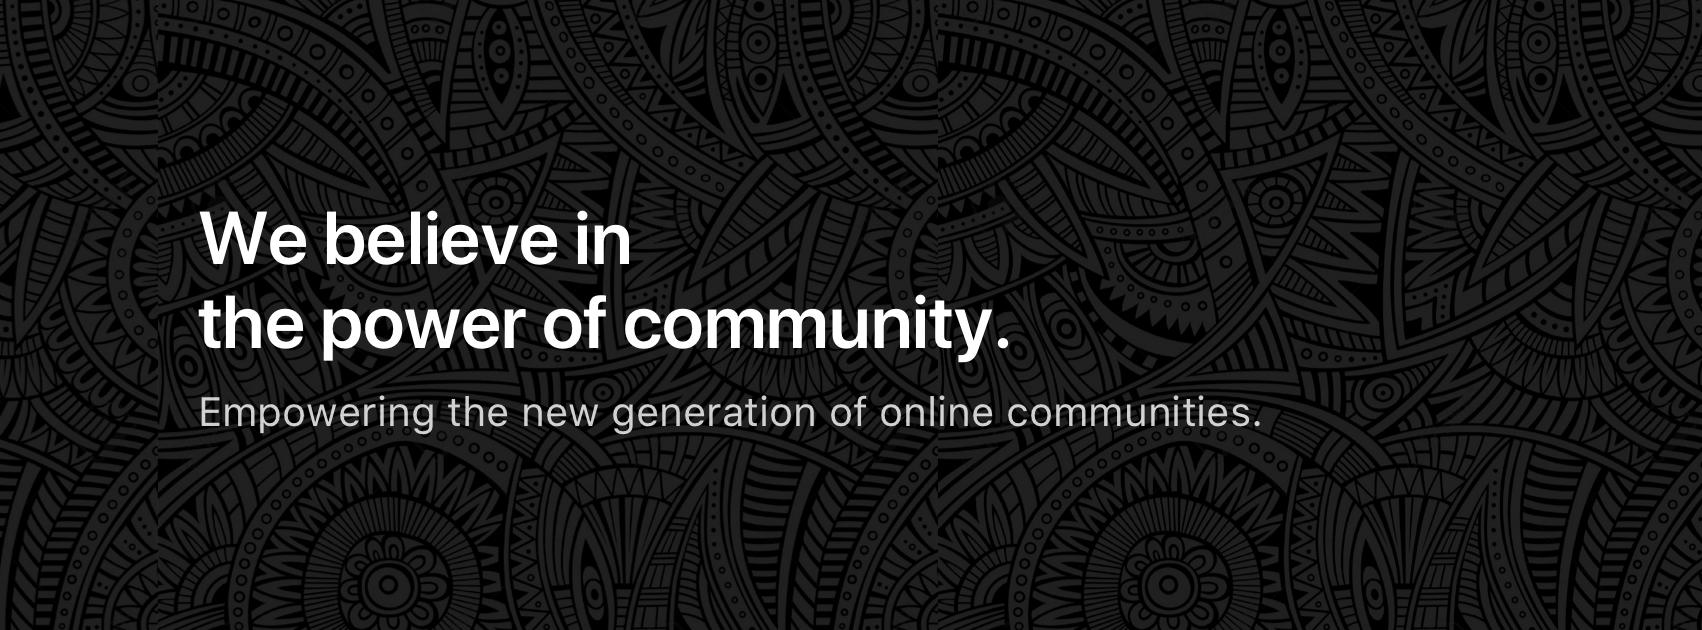 Avaliação Tribe Community Platform: Plataforma personalizável para criar comunidades online - Appvizer